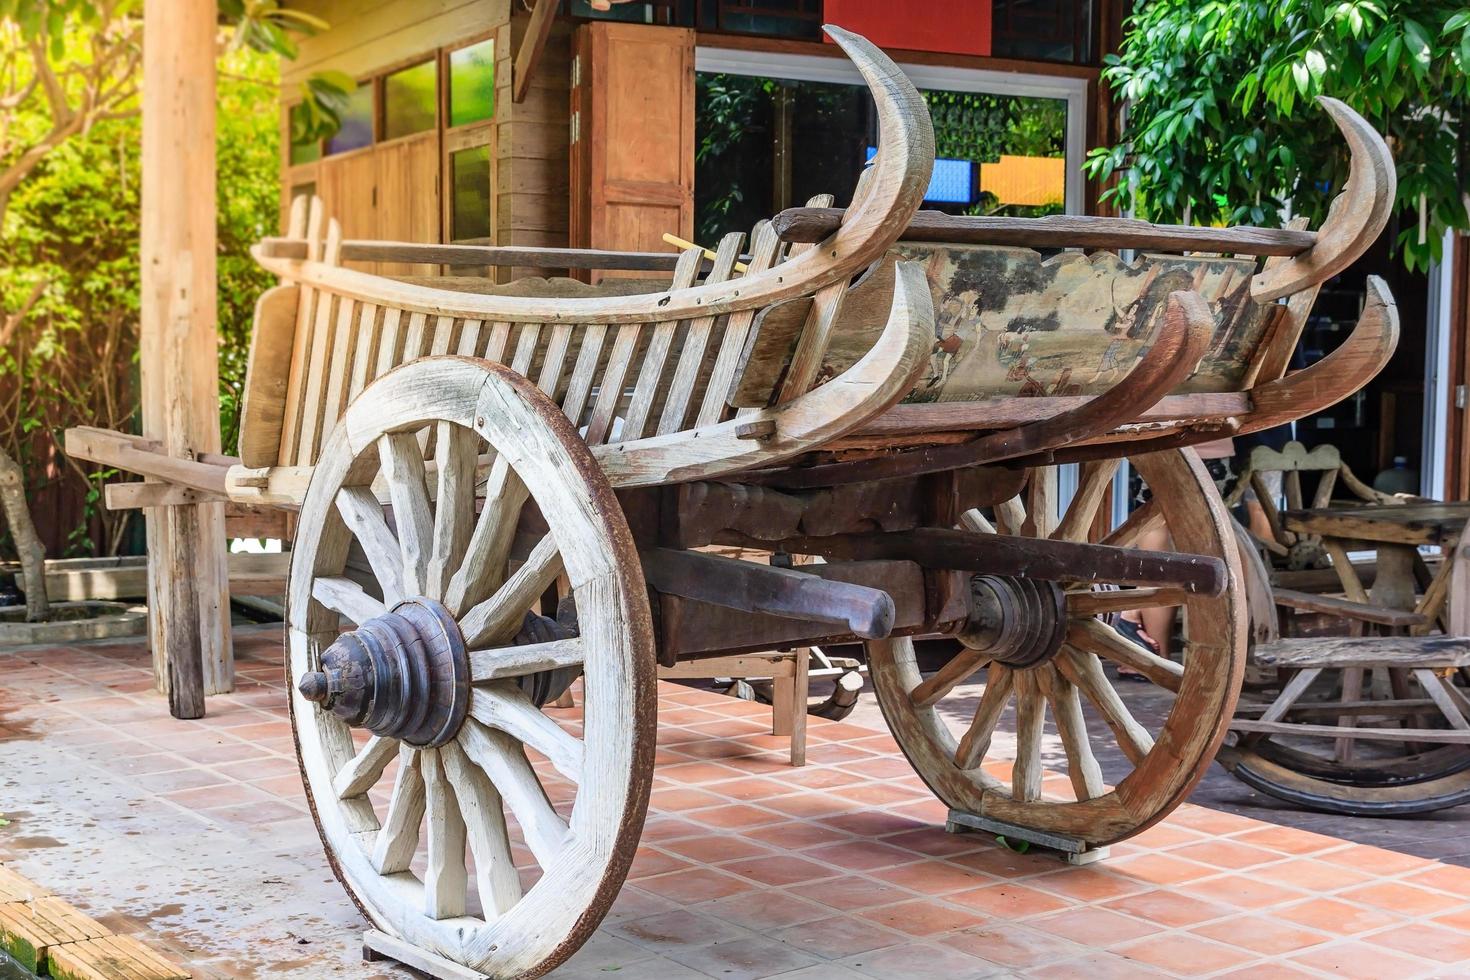 chariot en bois de style thaï en thaïlande photo